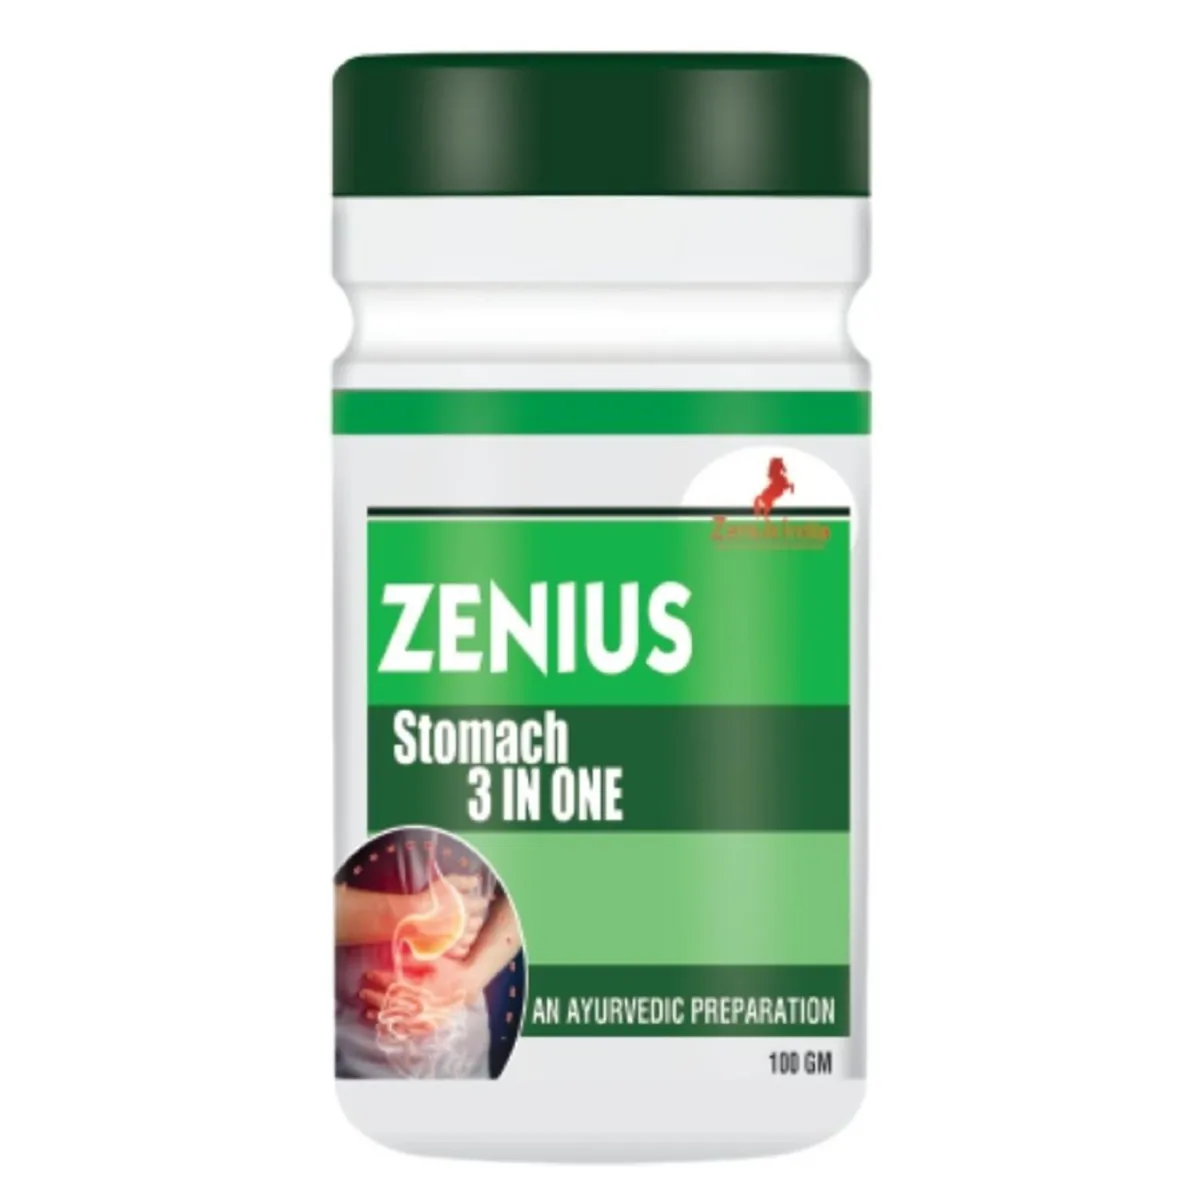 Zenius Stomach 3In One 100g